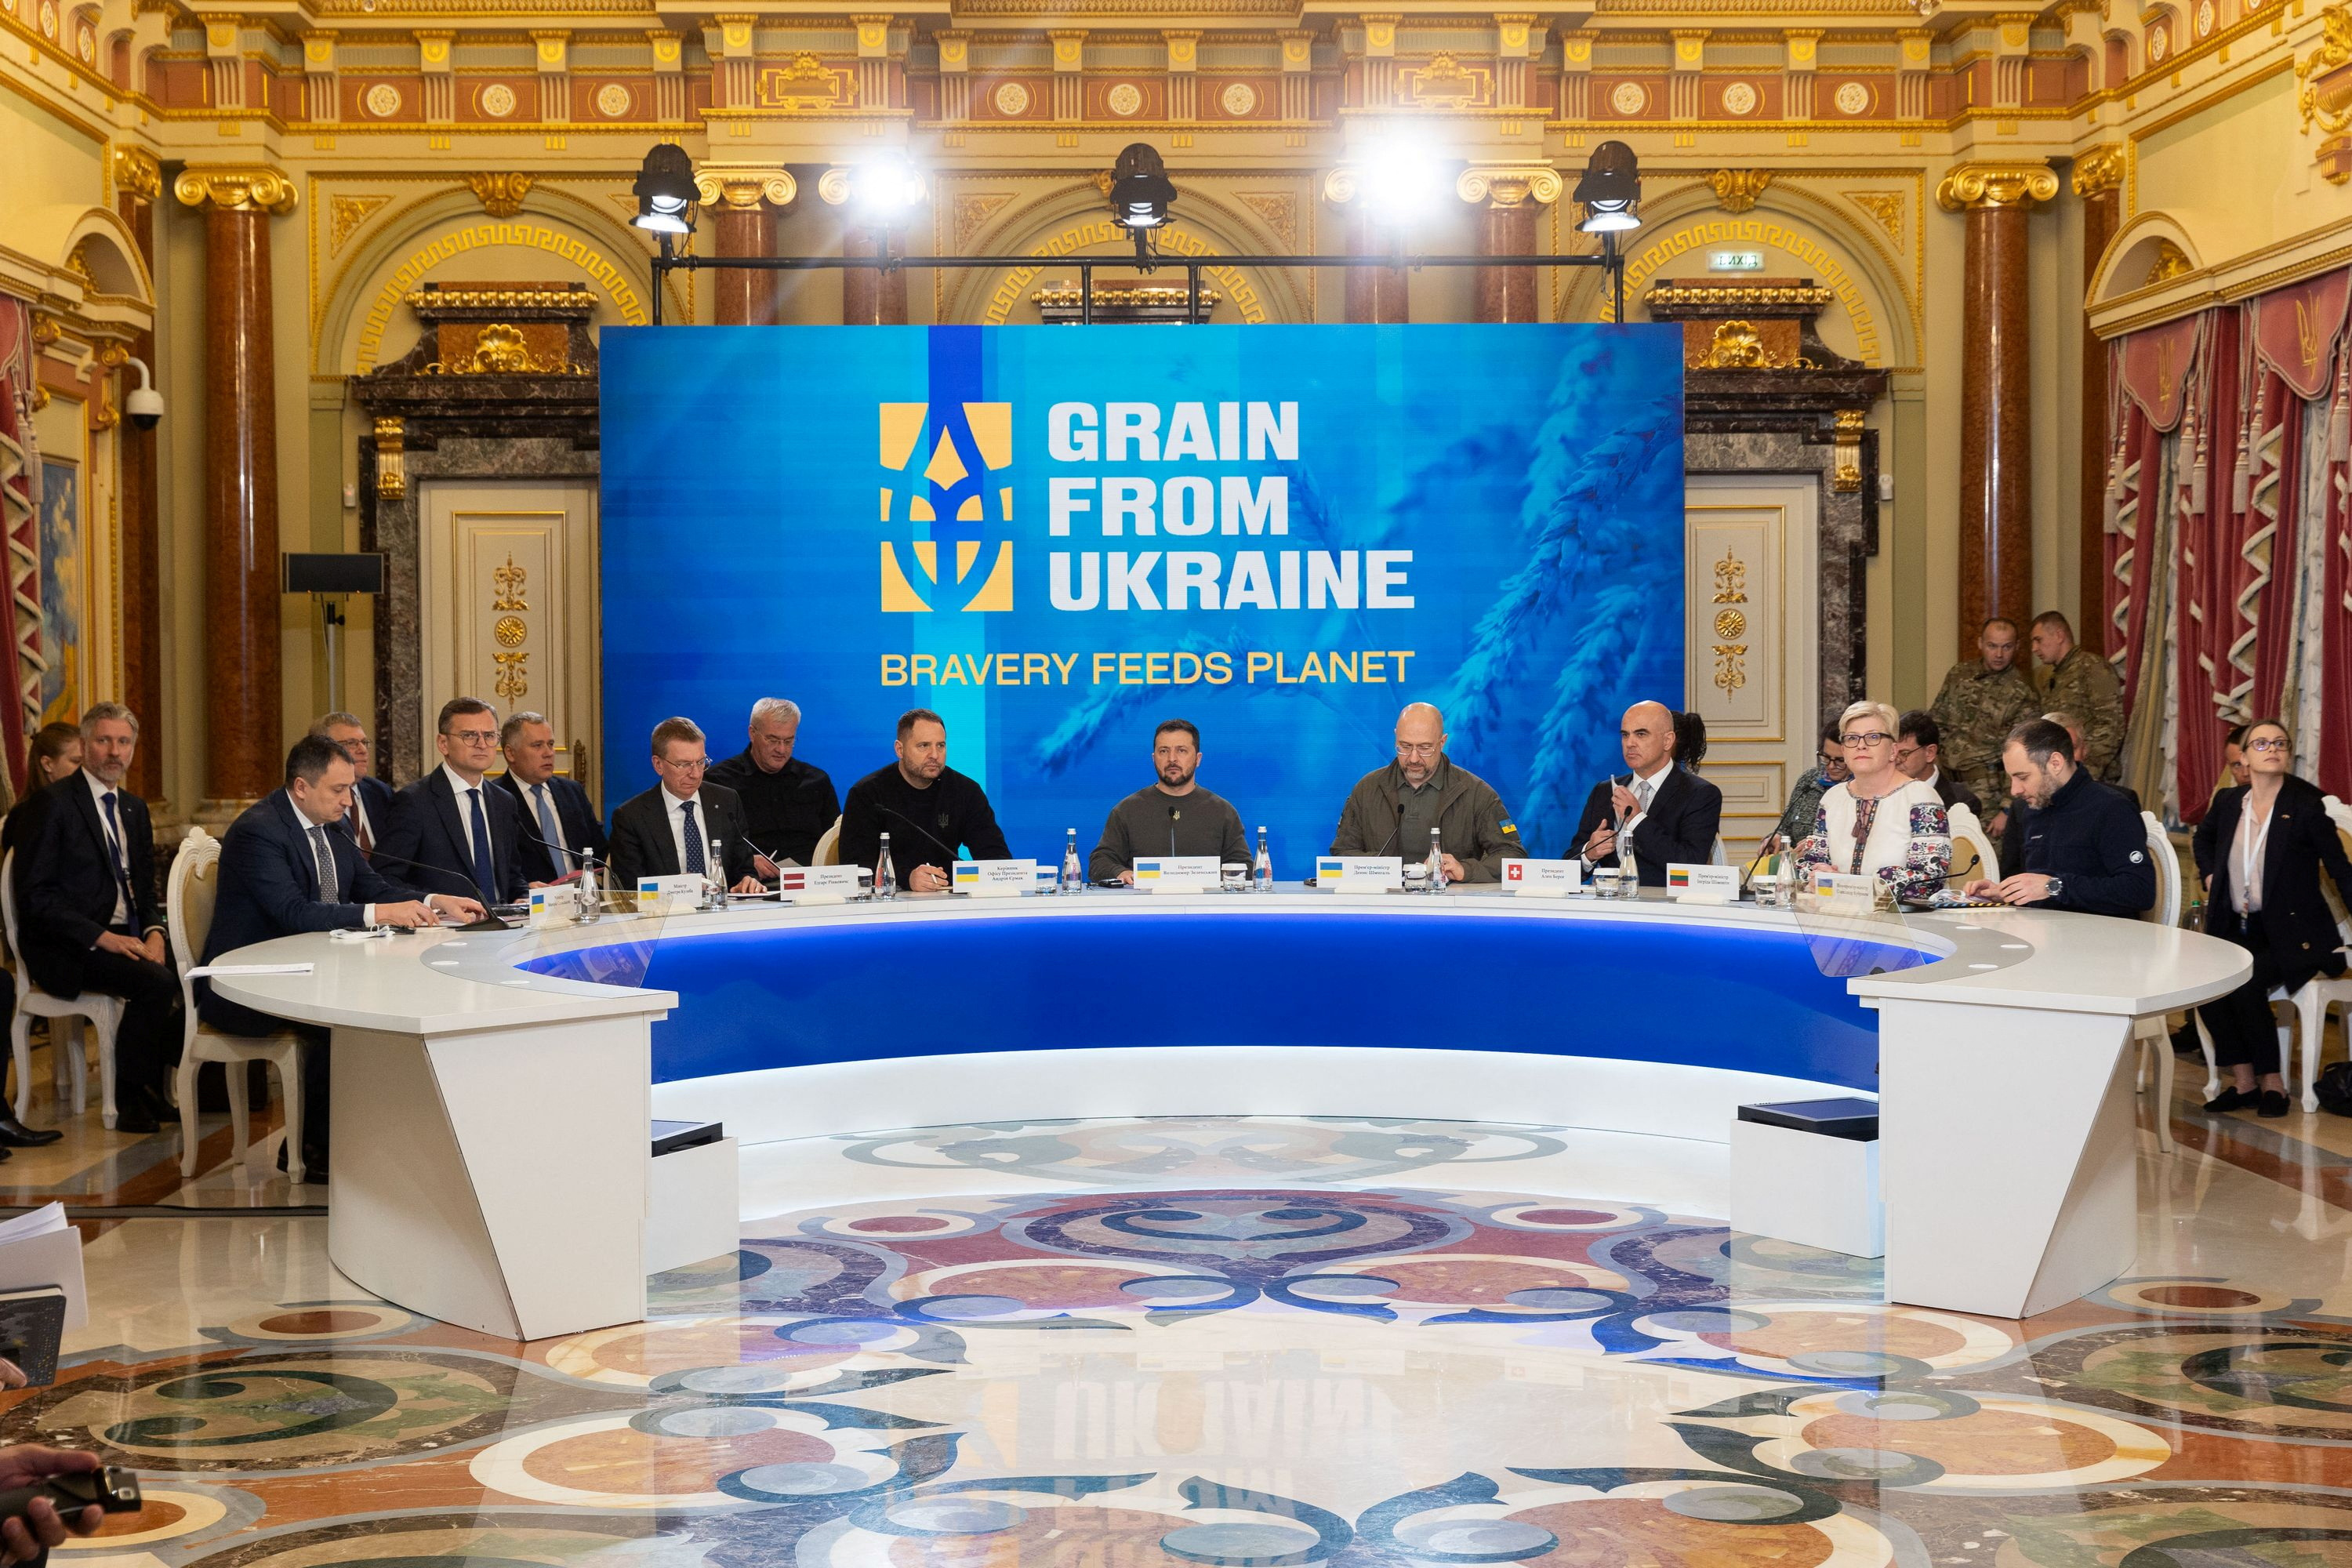 Grain from Ukraine summit in Kyiv